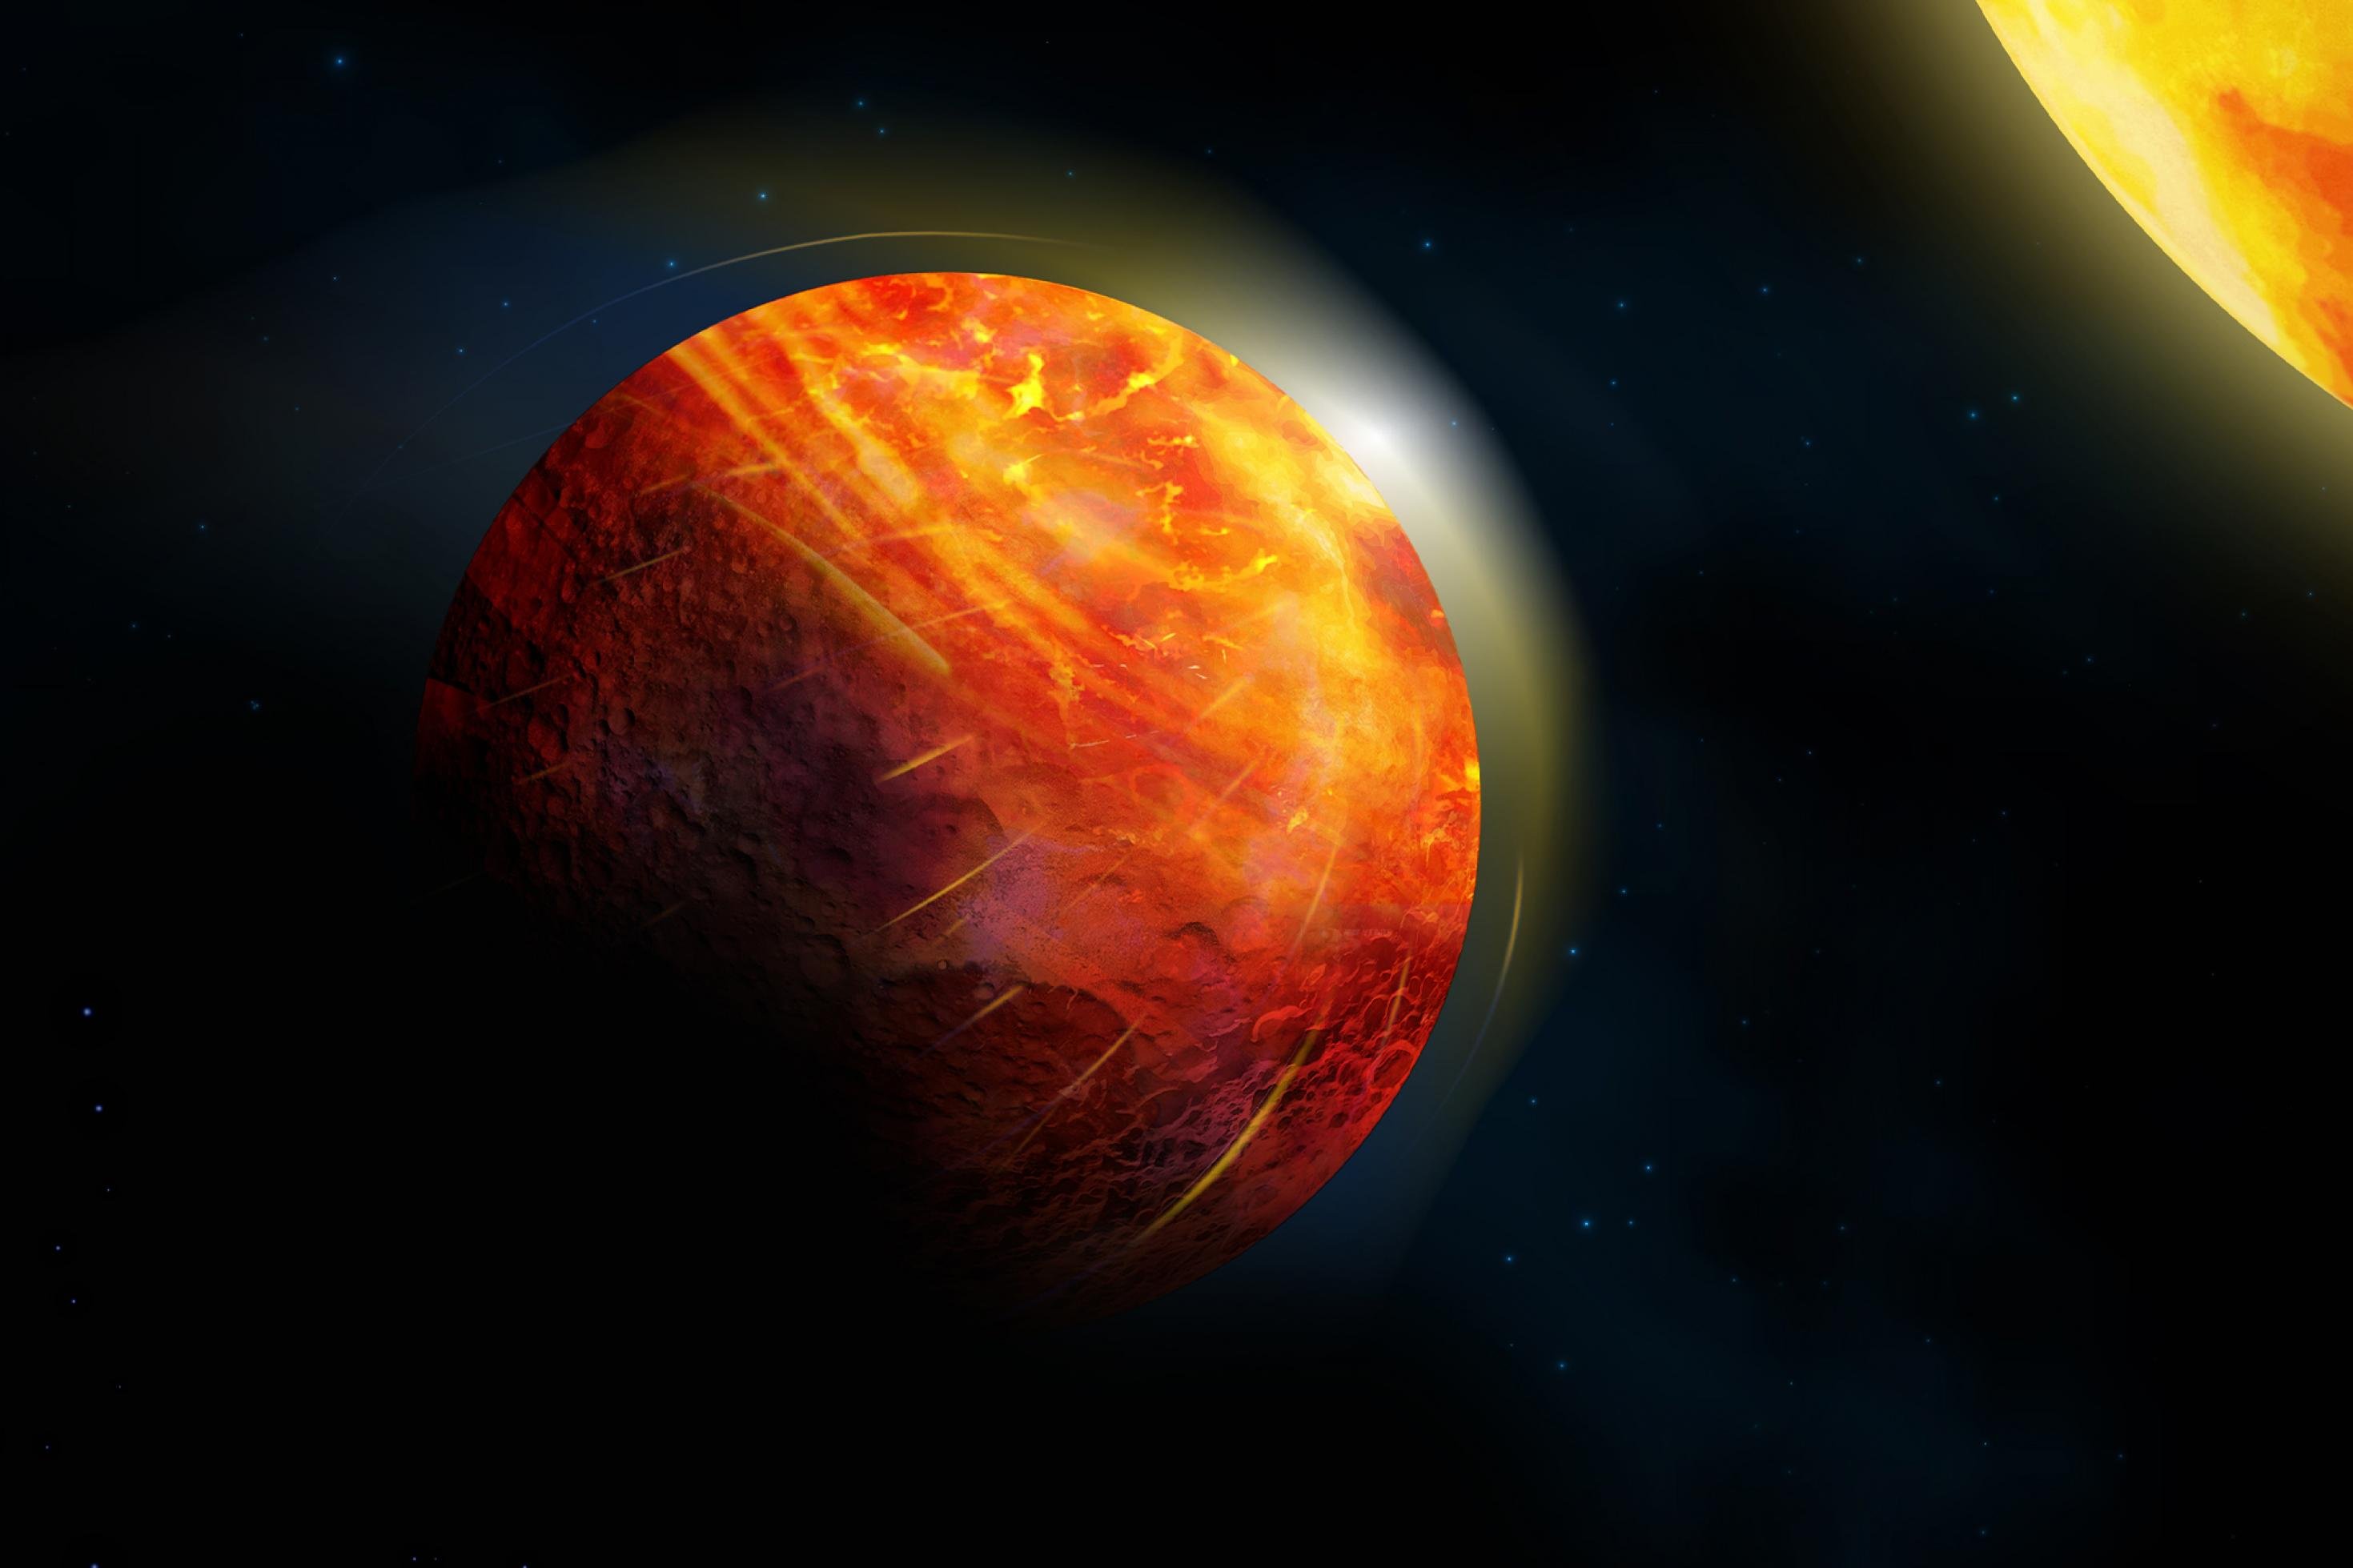 Die künstlerische Darstellung zeigt im Zentrum Lavaplaneten, der einen orange-roten Stern umkreist. Der Stern befindet sich rechts oben im Bild und ist nur im Ausschnitt zu sehen. Der Exoplanet selbst ist ebenfalls rötlich eingefärbt.